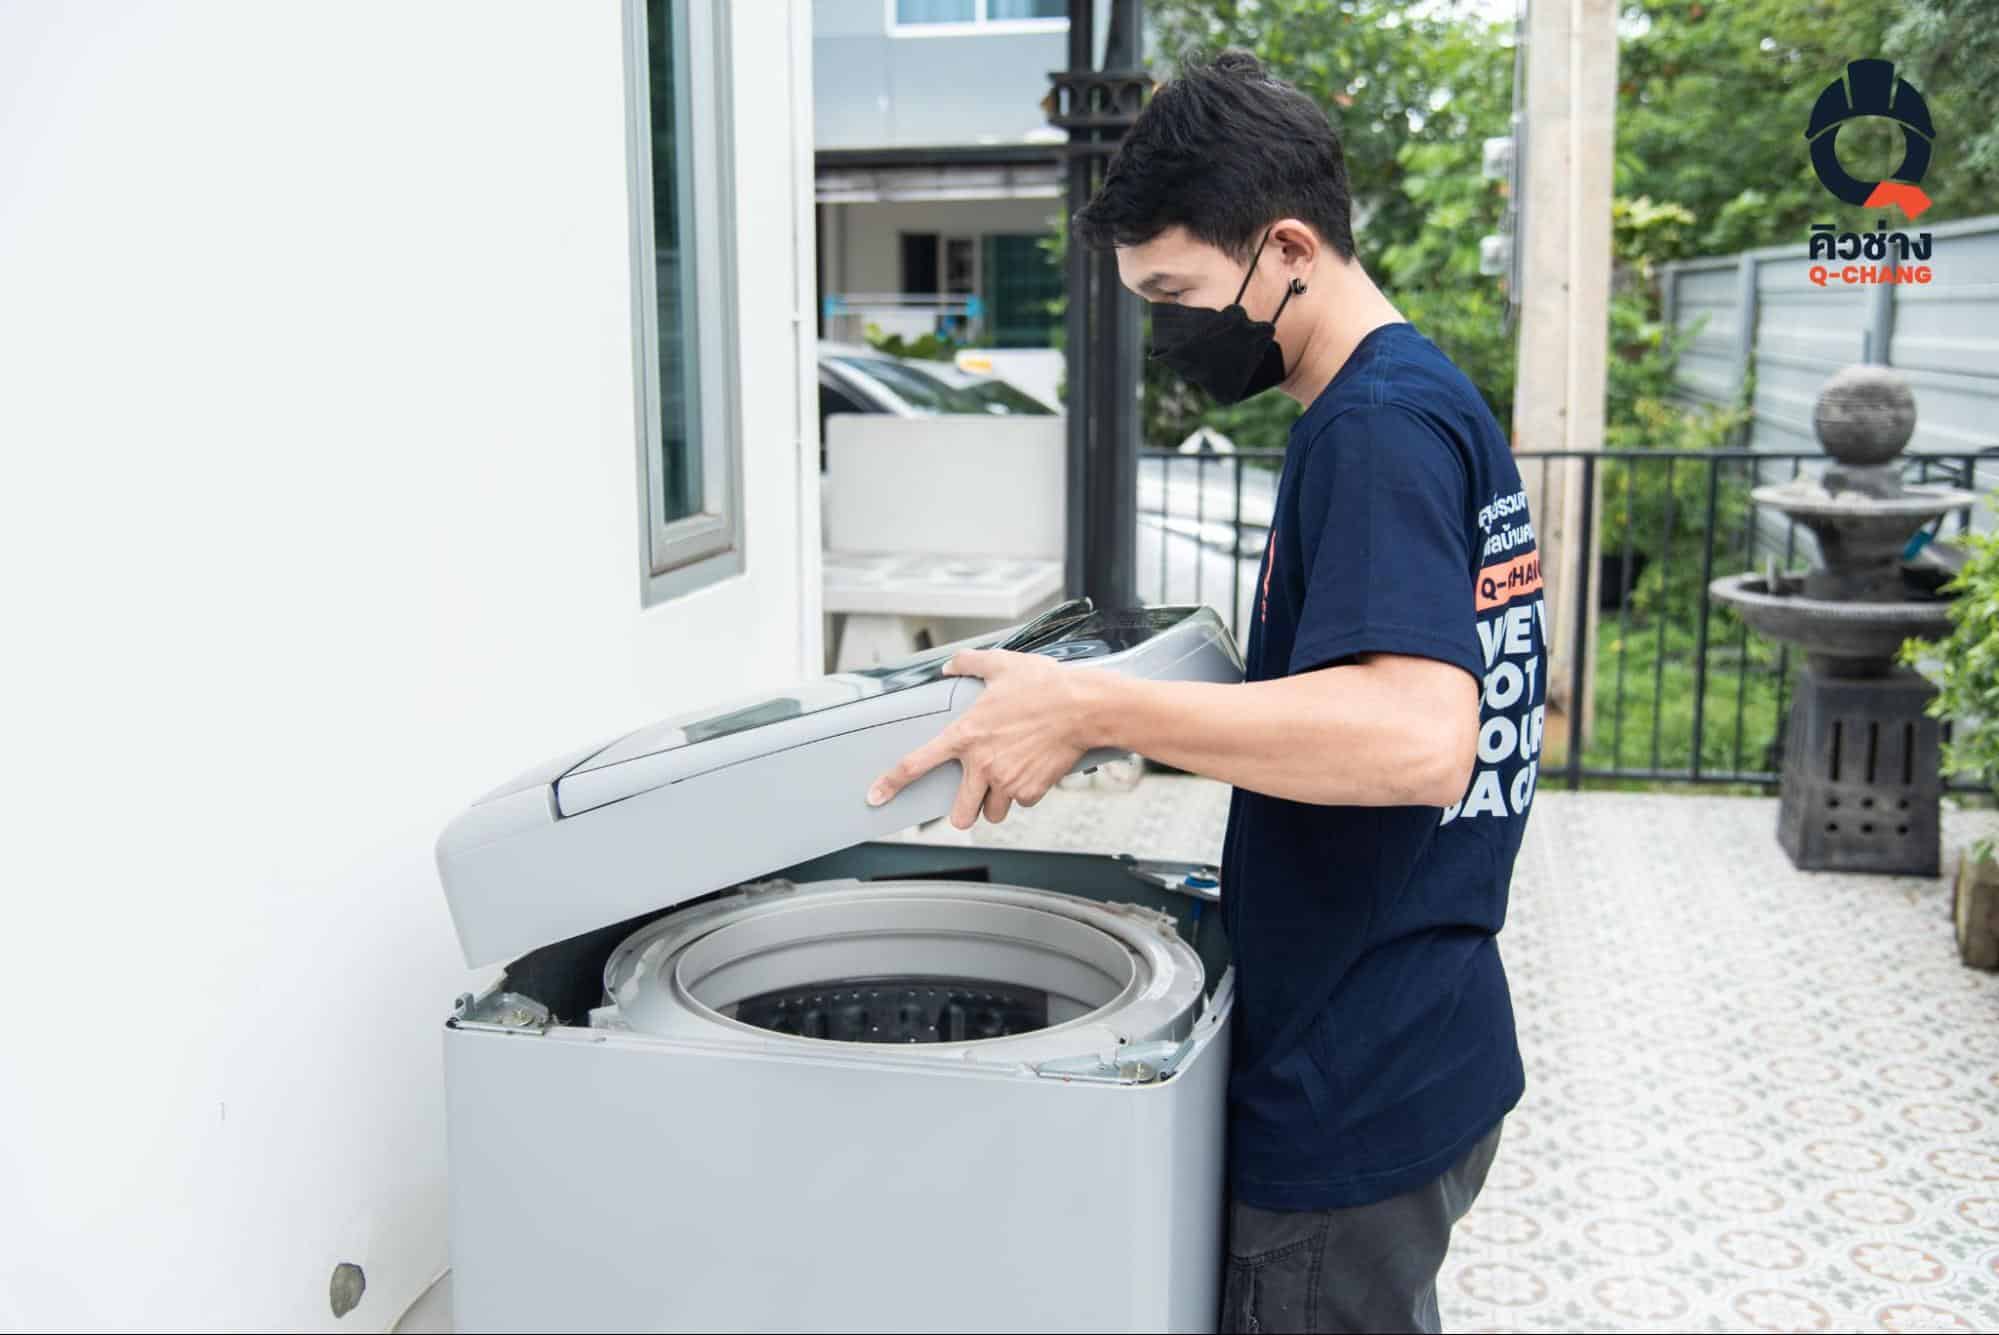 สิ่งสกปรกและเชื้อโรคที่สะสม บอกลาได้ด้วยการล้างเครื่องซักผ้า ฝาหน้าหรือฝาบนให้ถูกวิธี